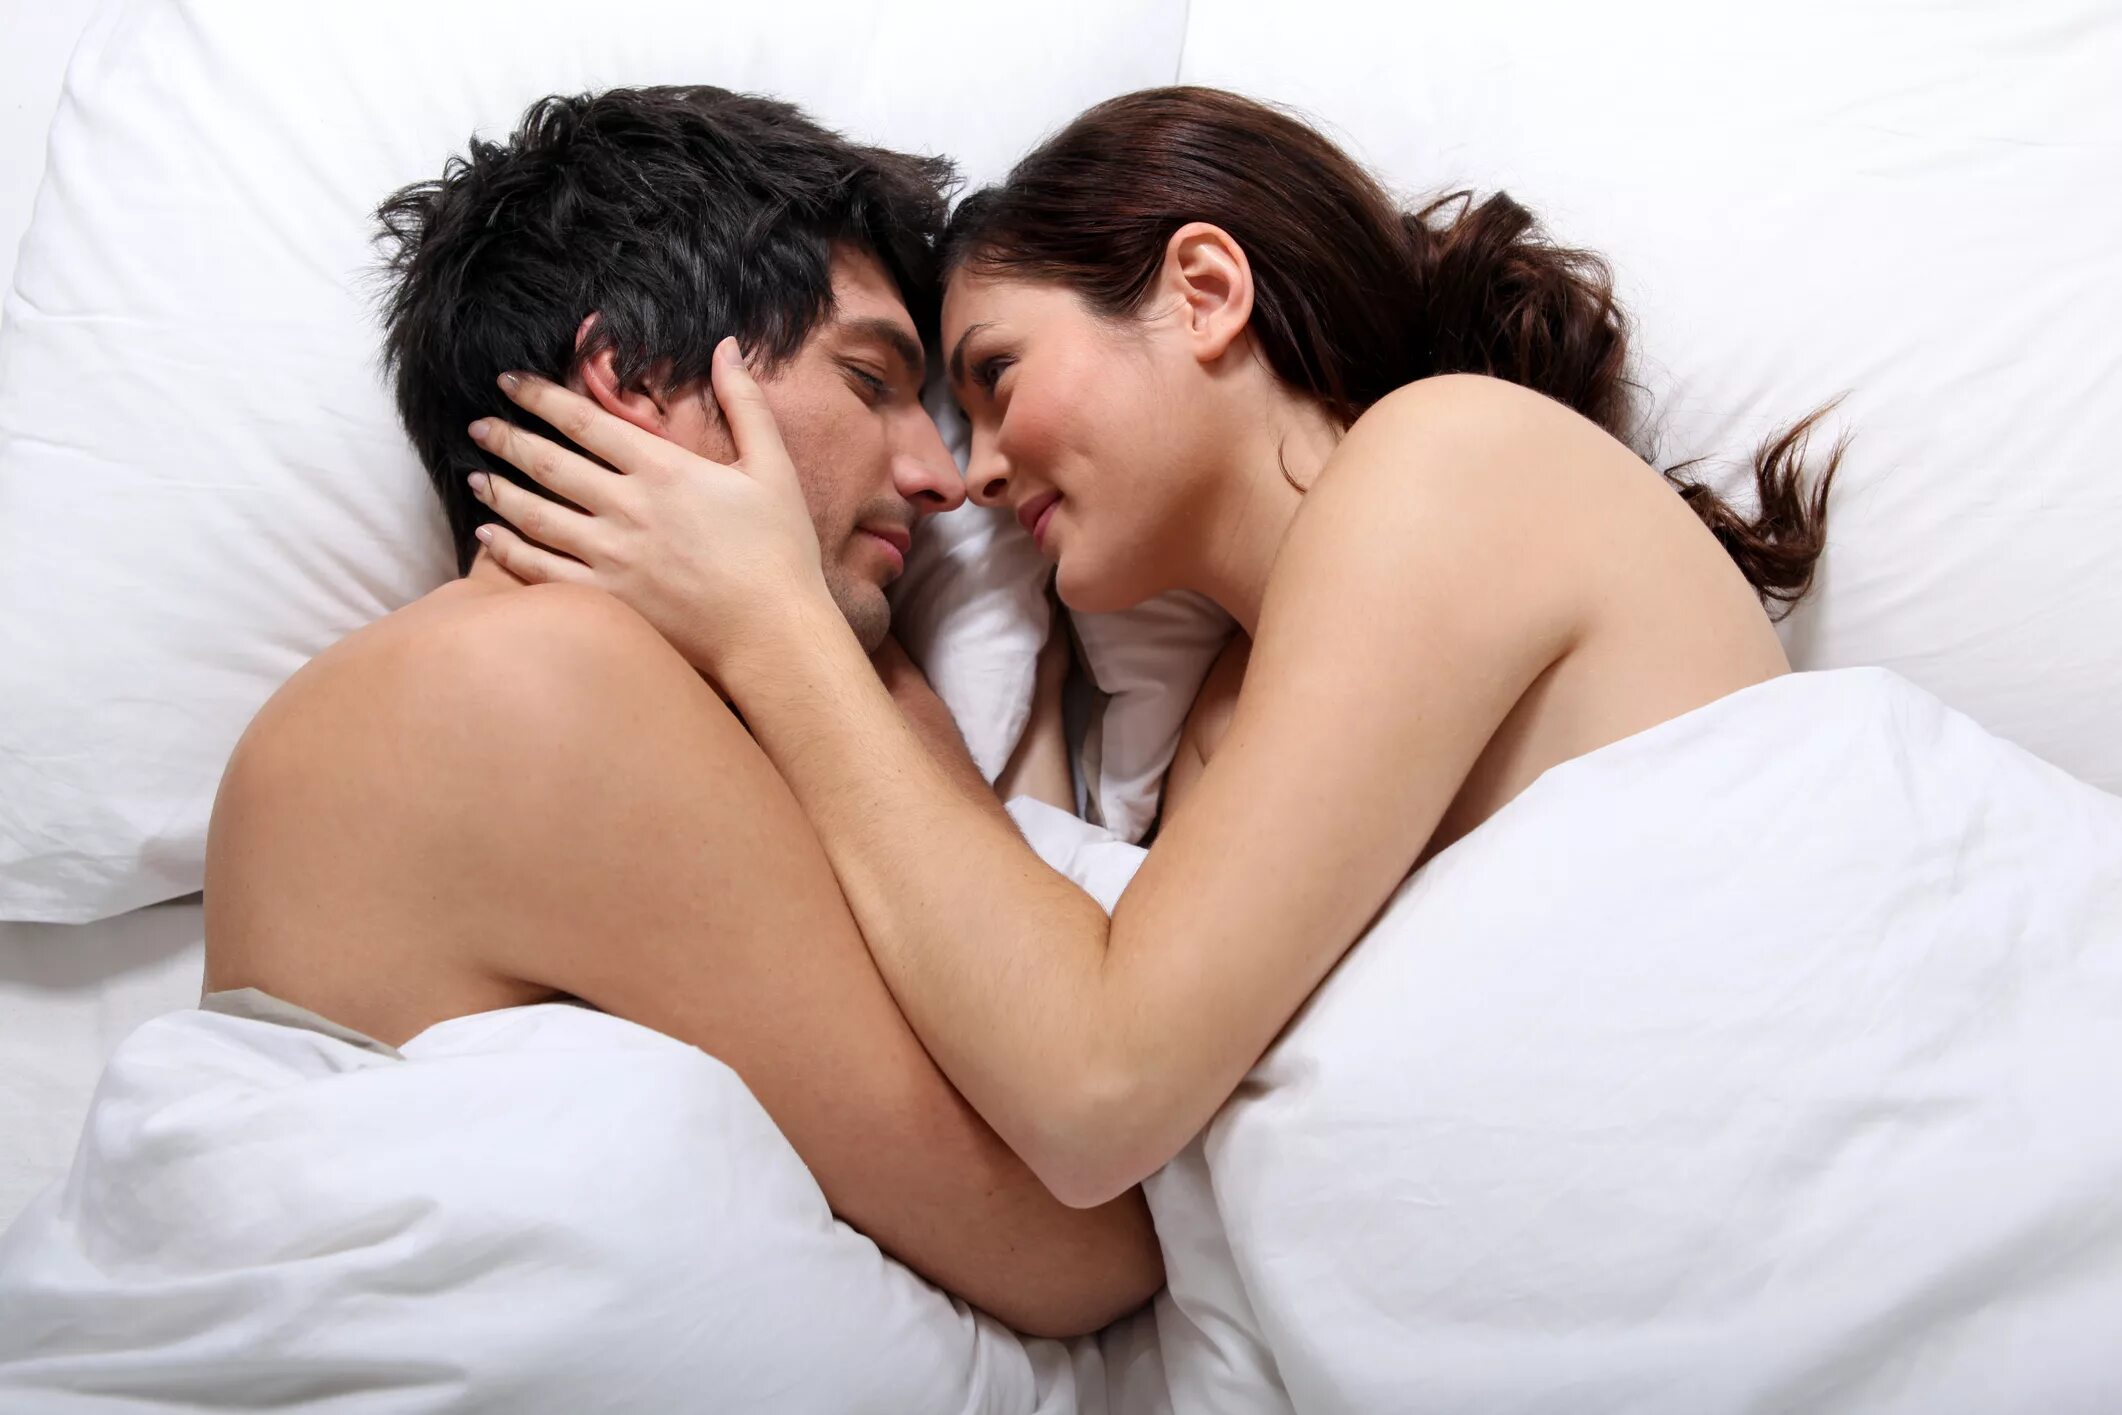 Любовные утехи женщины. Любовные отношения в постели. Мужчина и женщина в постели. Занимаются любовью в кровати.